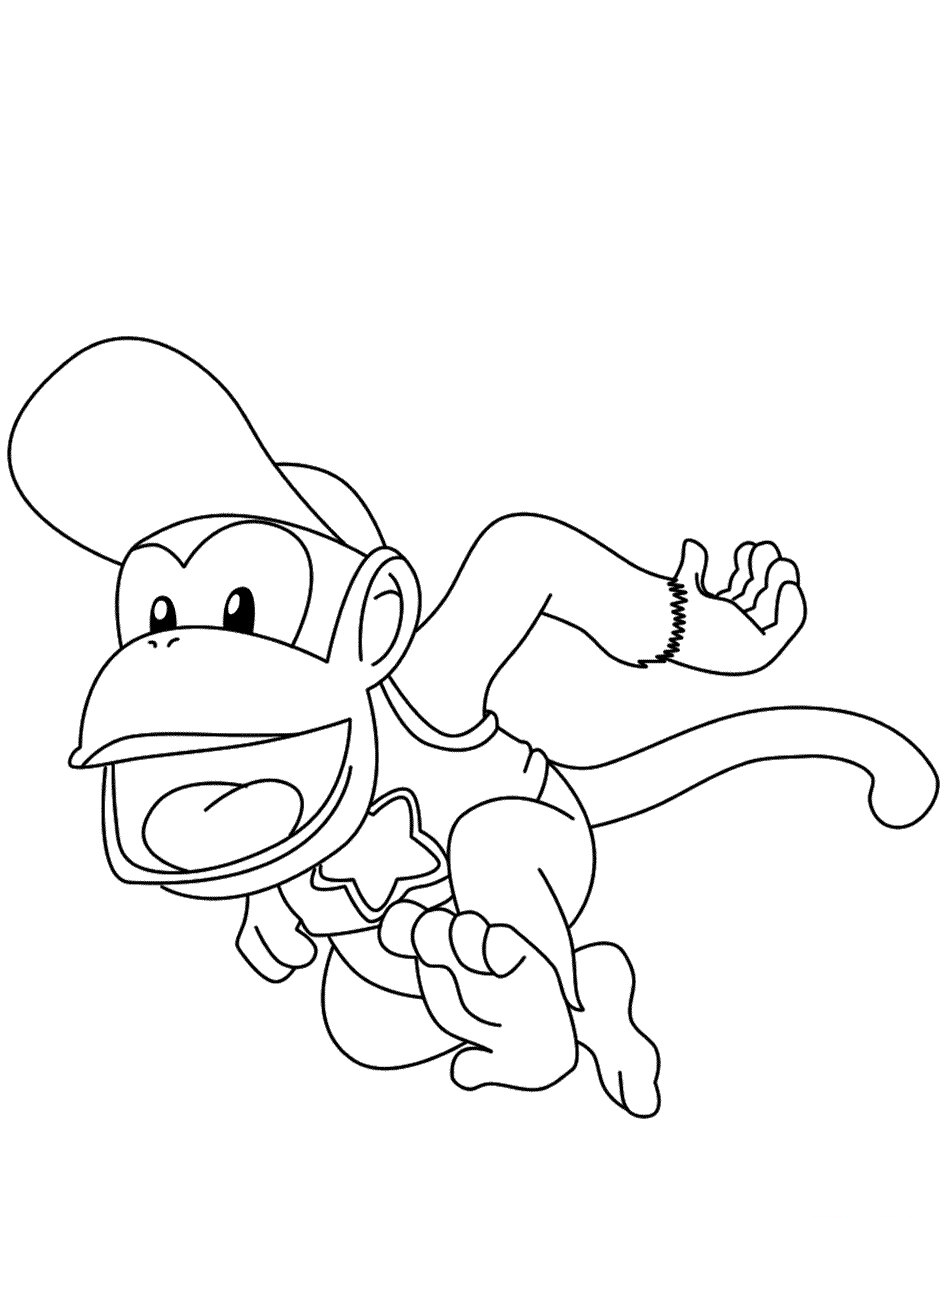 Diddy Kong indossa un berretto e sta scappando da Diddy Kong